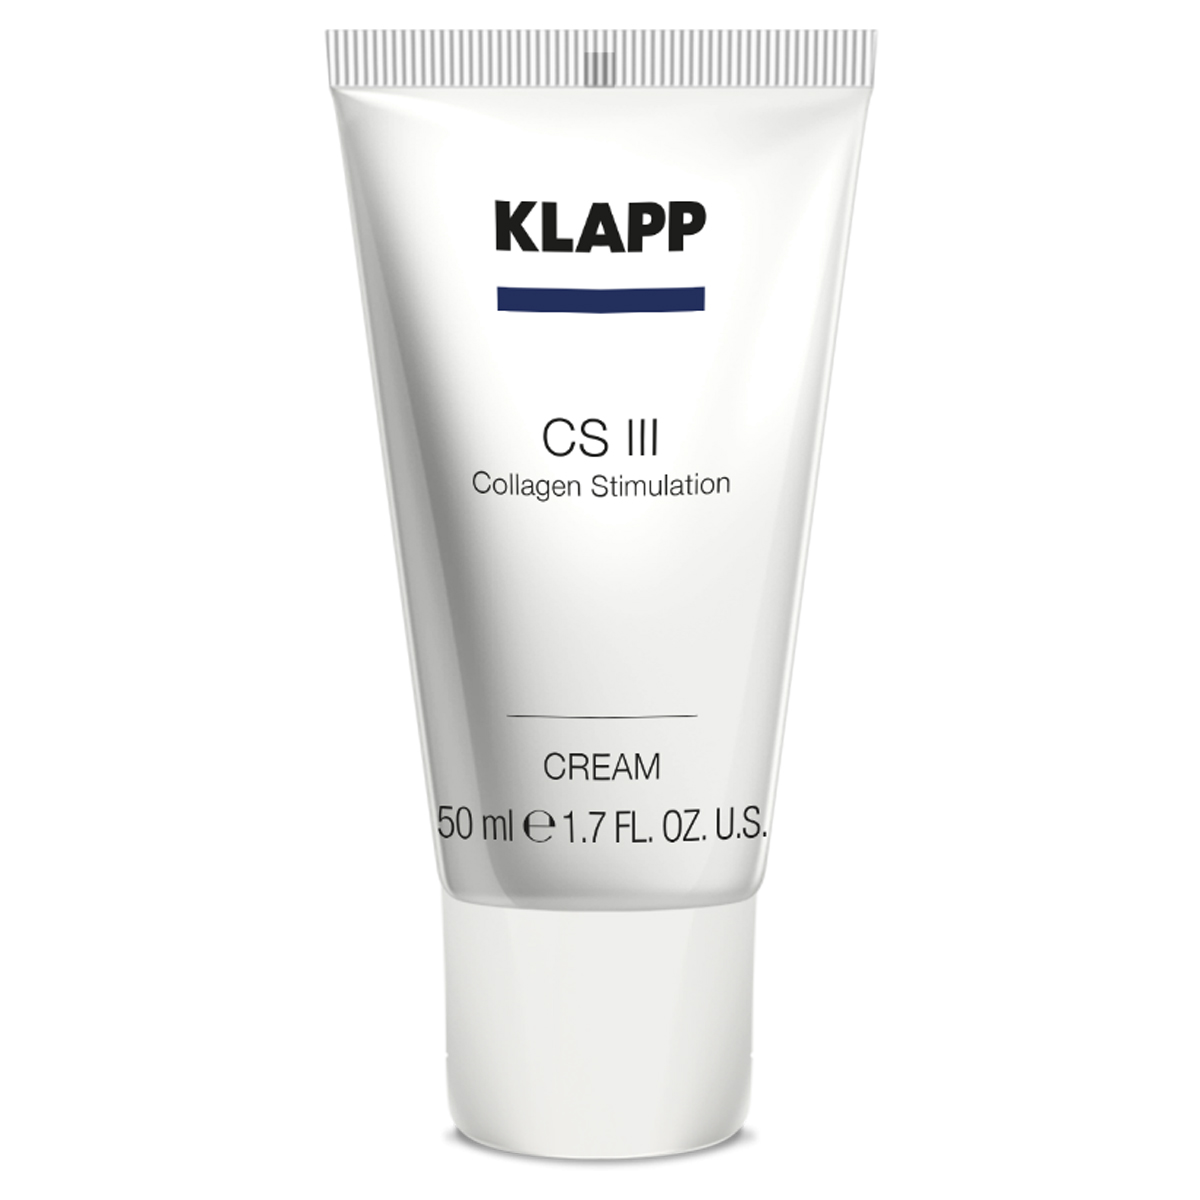 KLAPP CS III Collagen Stimulation Cream 50 ml